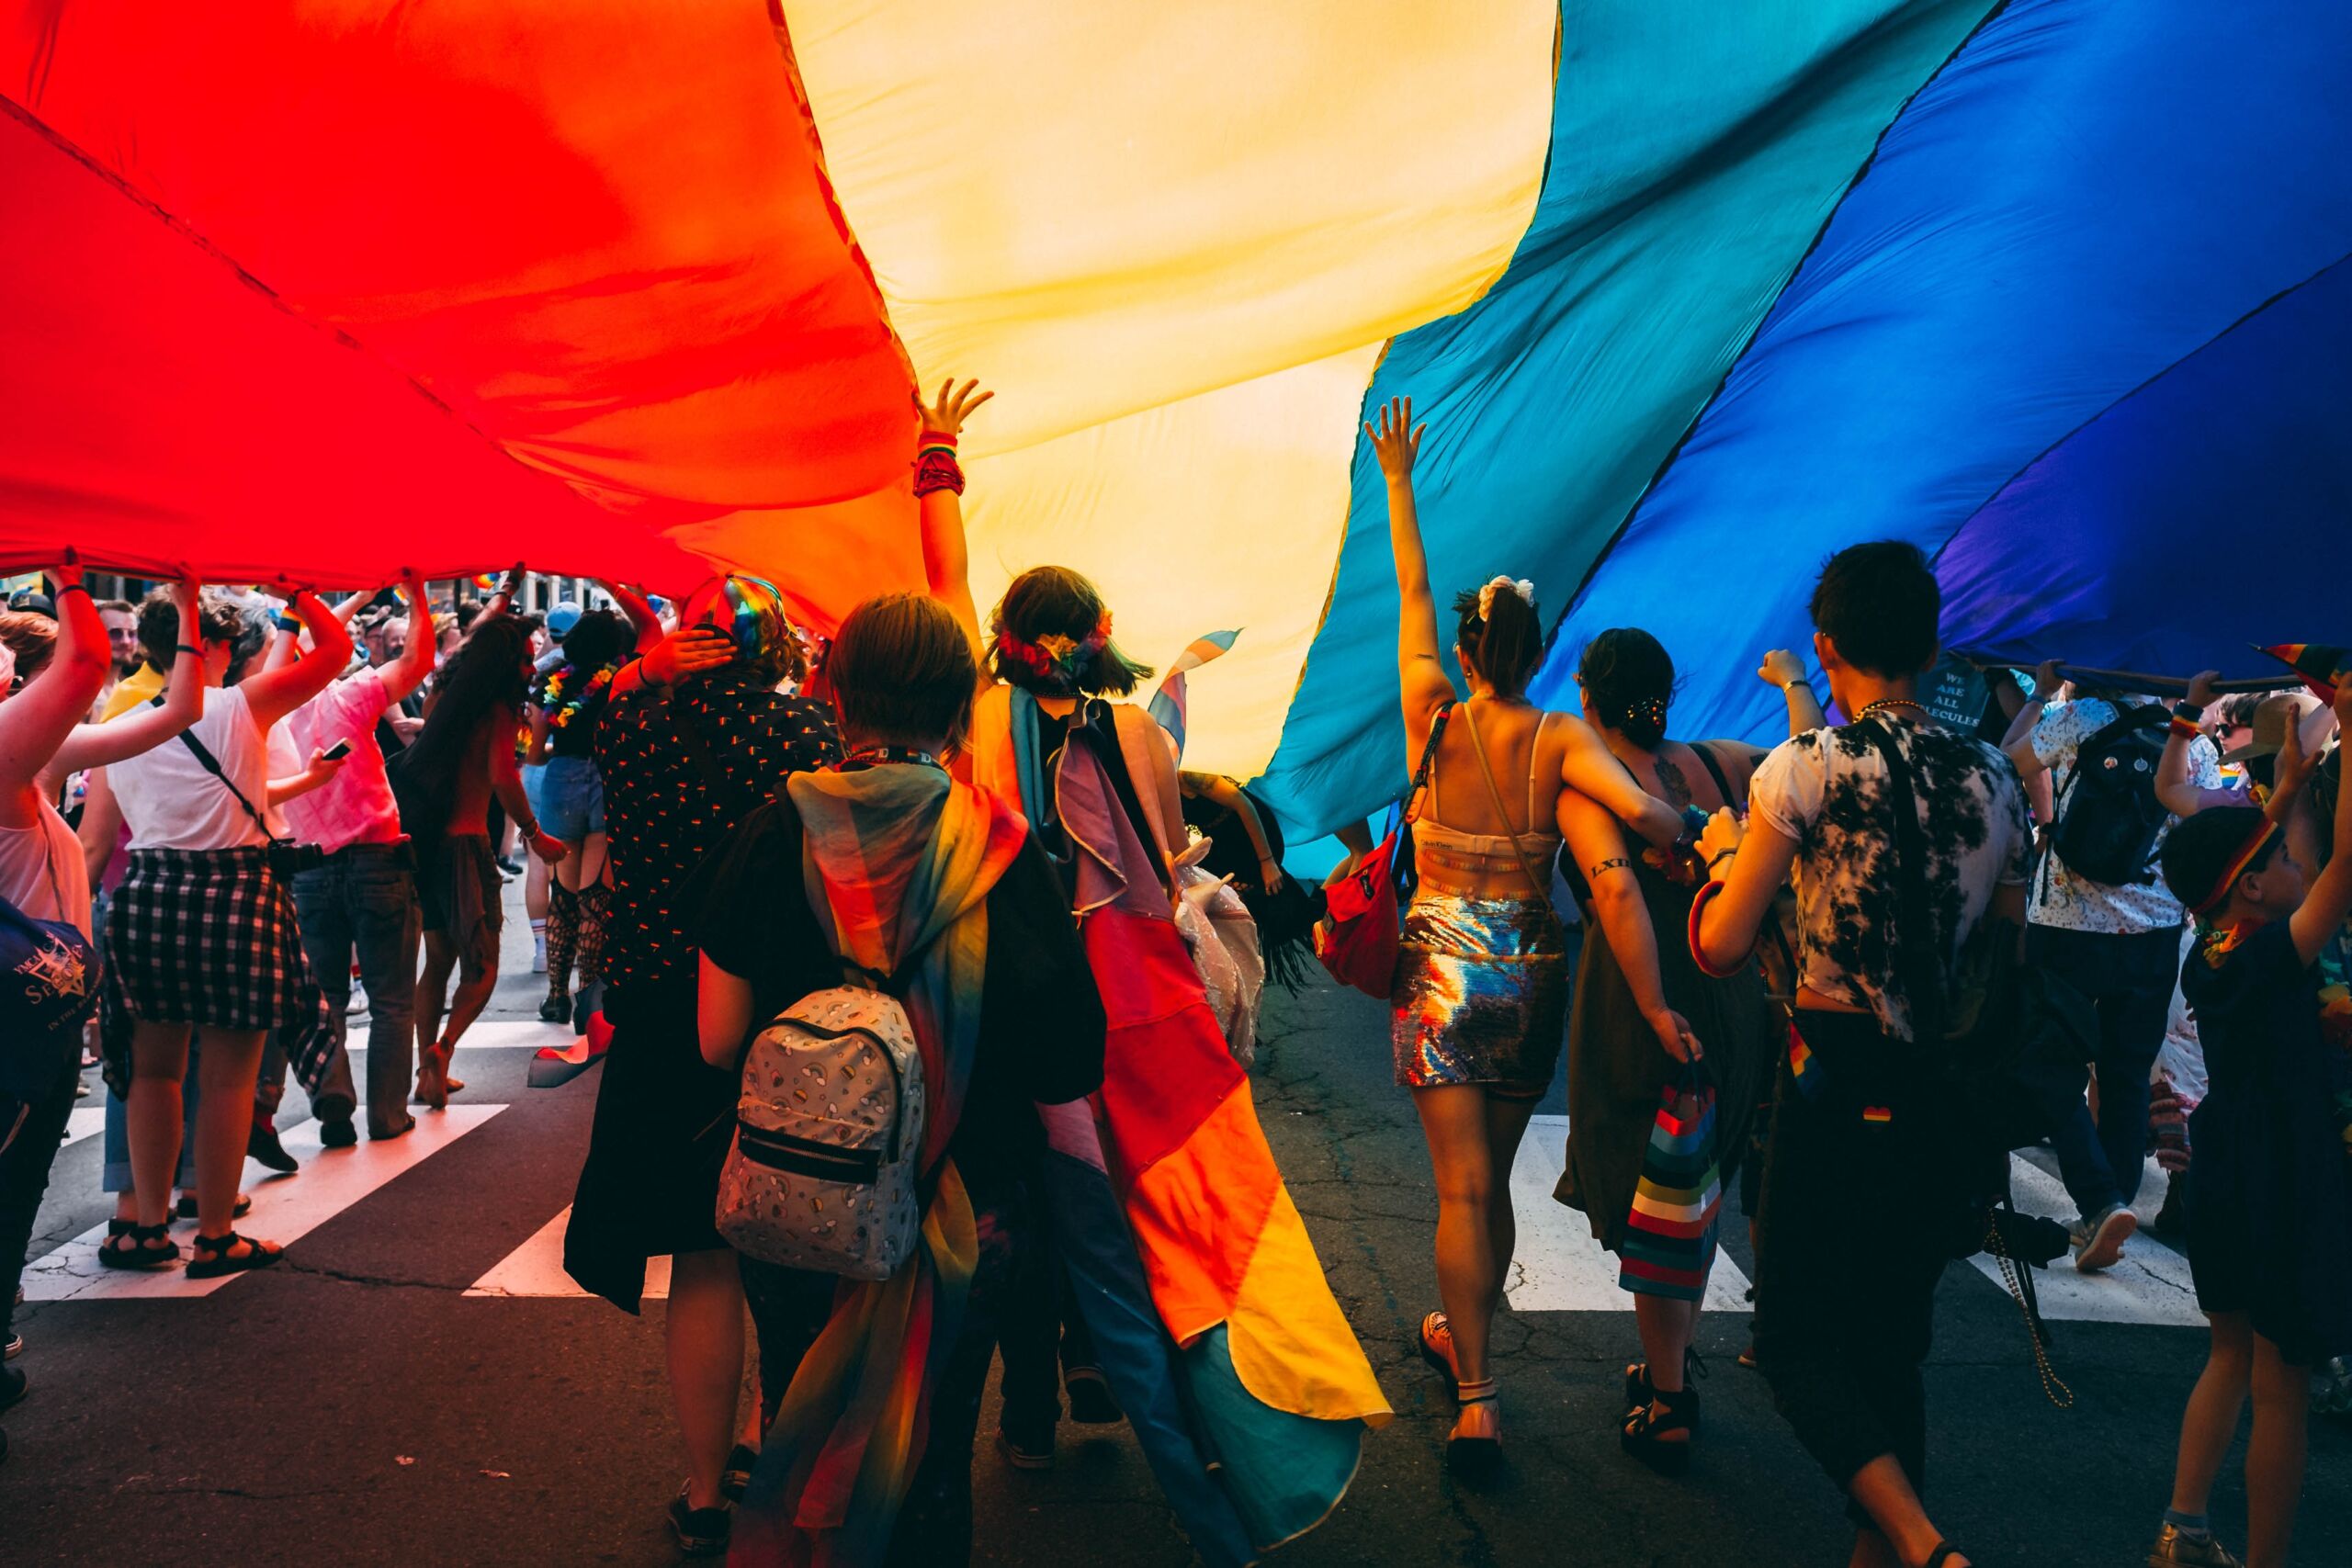 Seven people under large pride flag